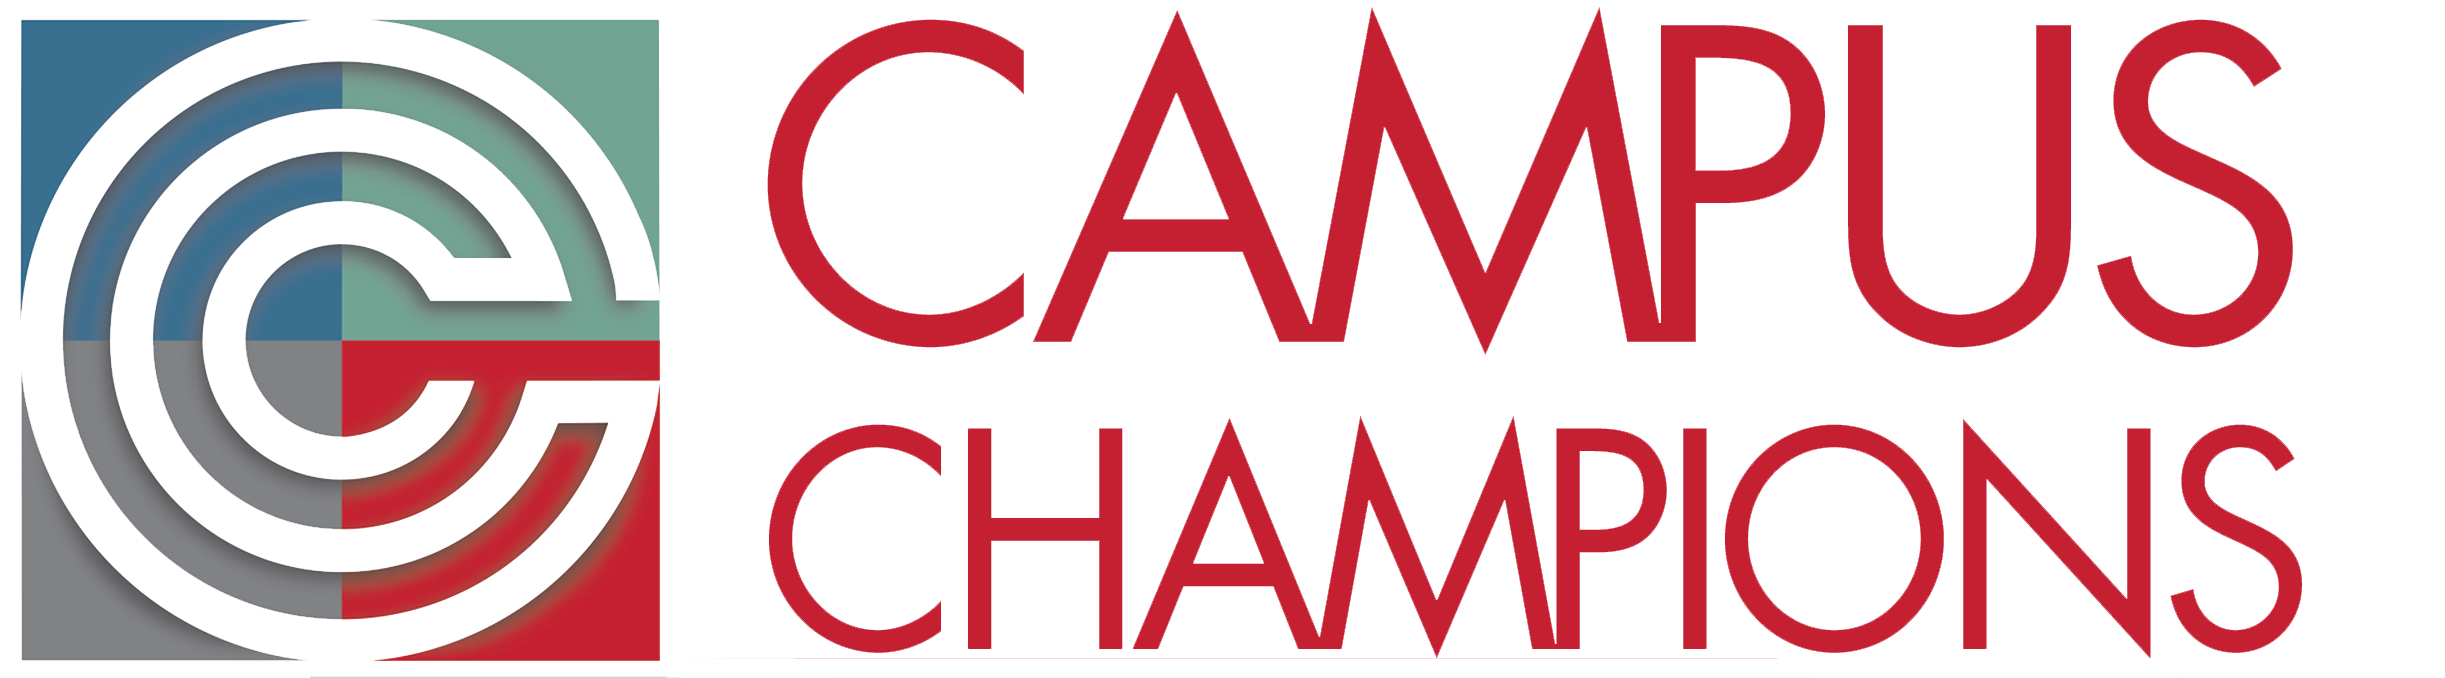 Campus Champions